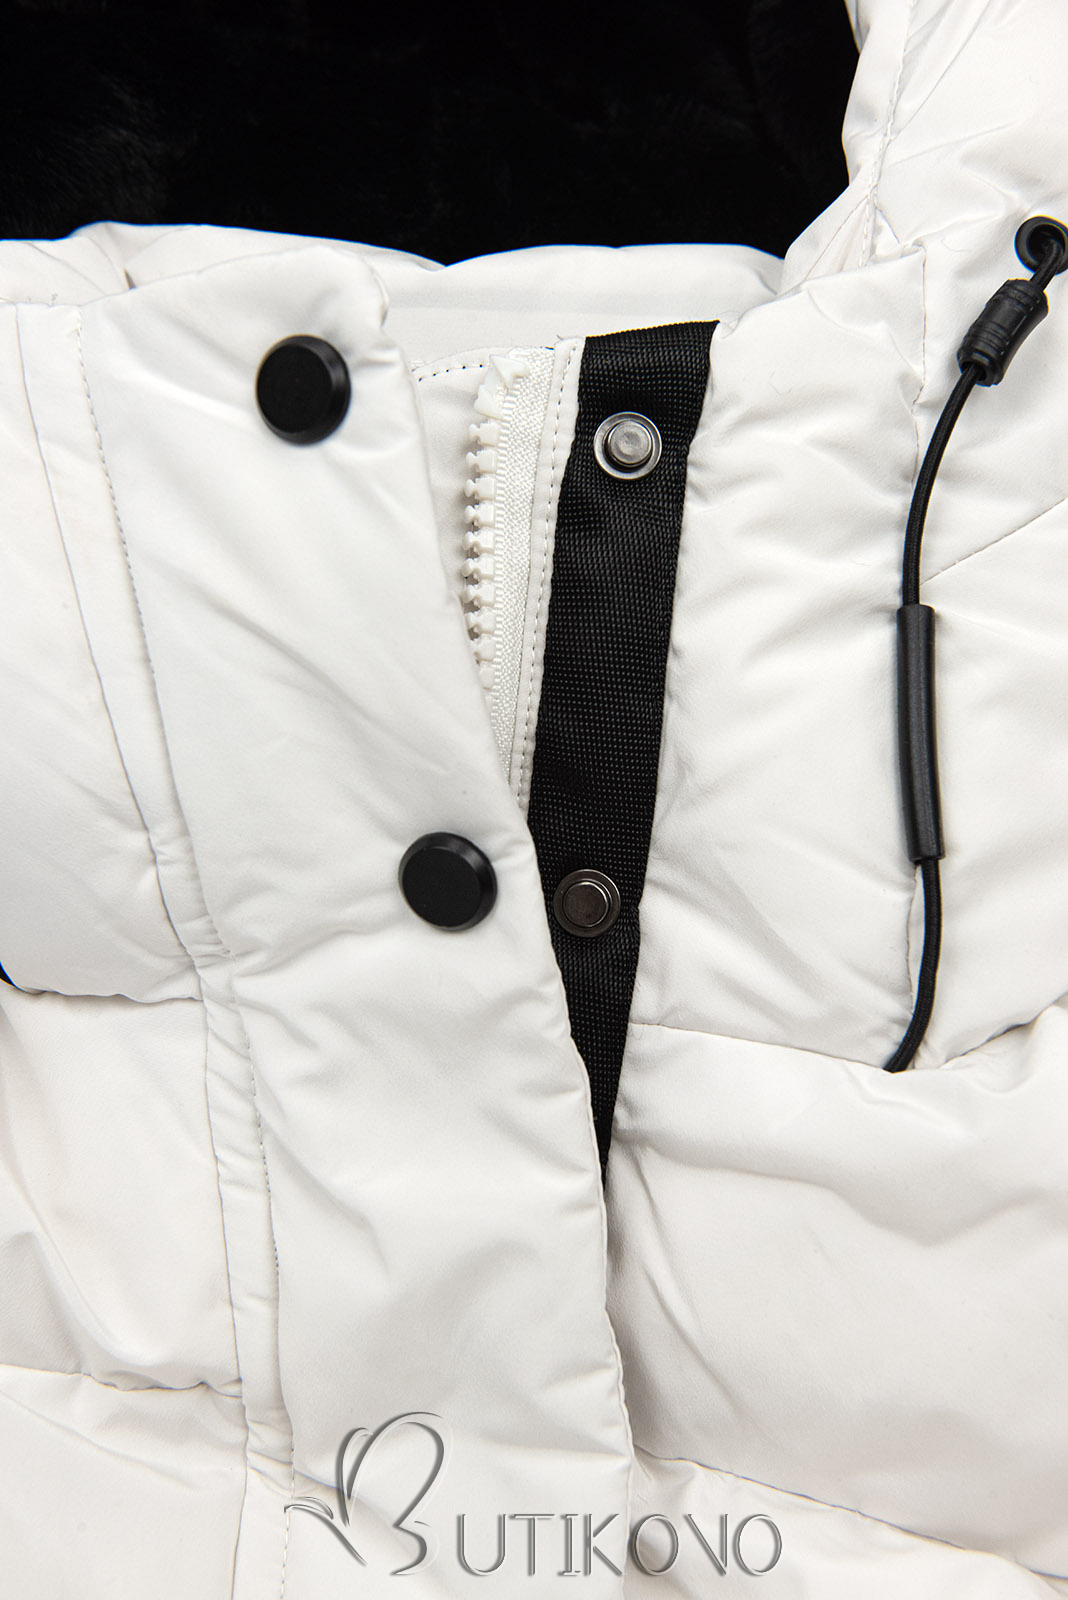 Extra teplá dlouhá zimní bunda v bílé barvě